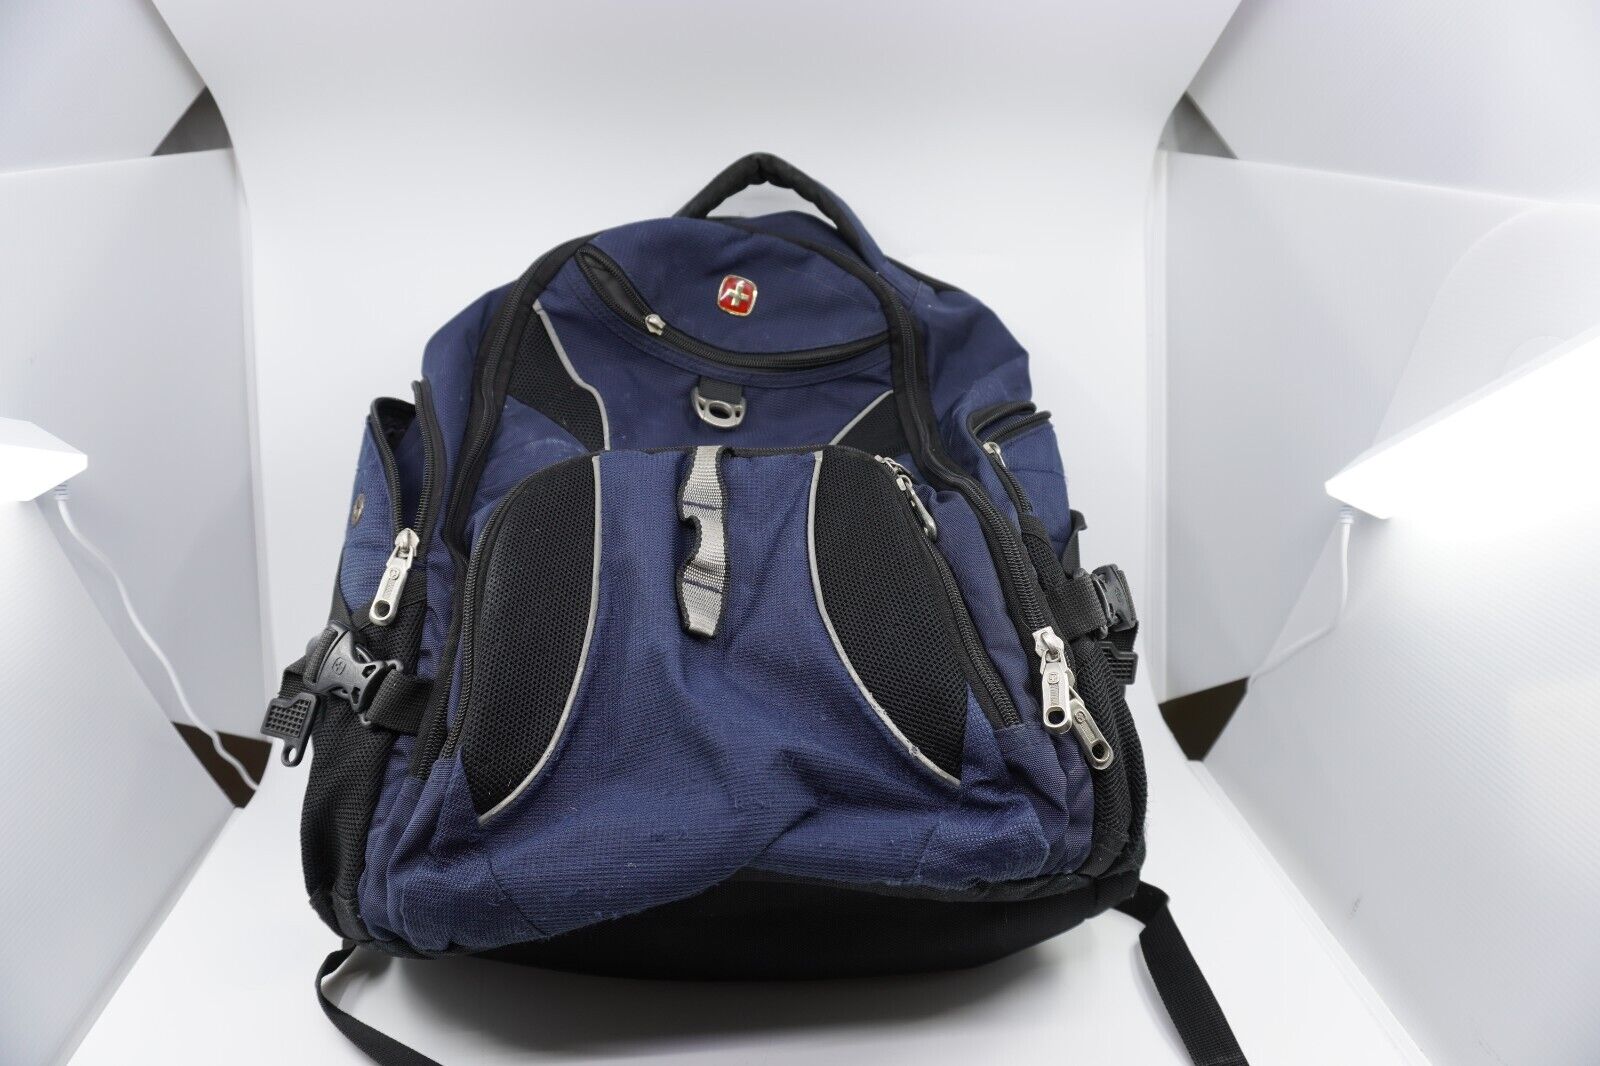 SWISSGEAR Travel Gear 1900 ScanSmart TSA Laptop Backpack - Blue 17 In. Bag